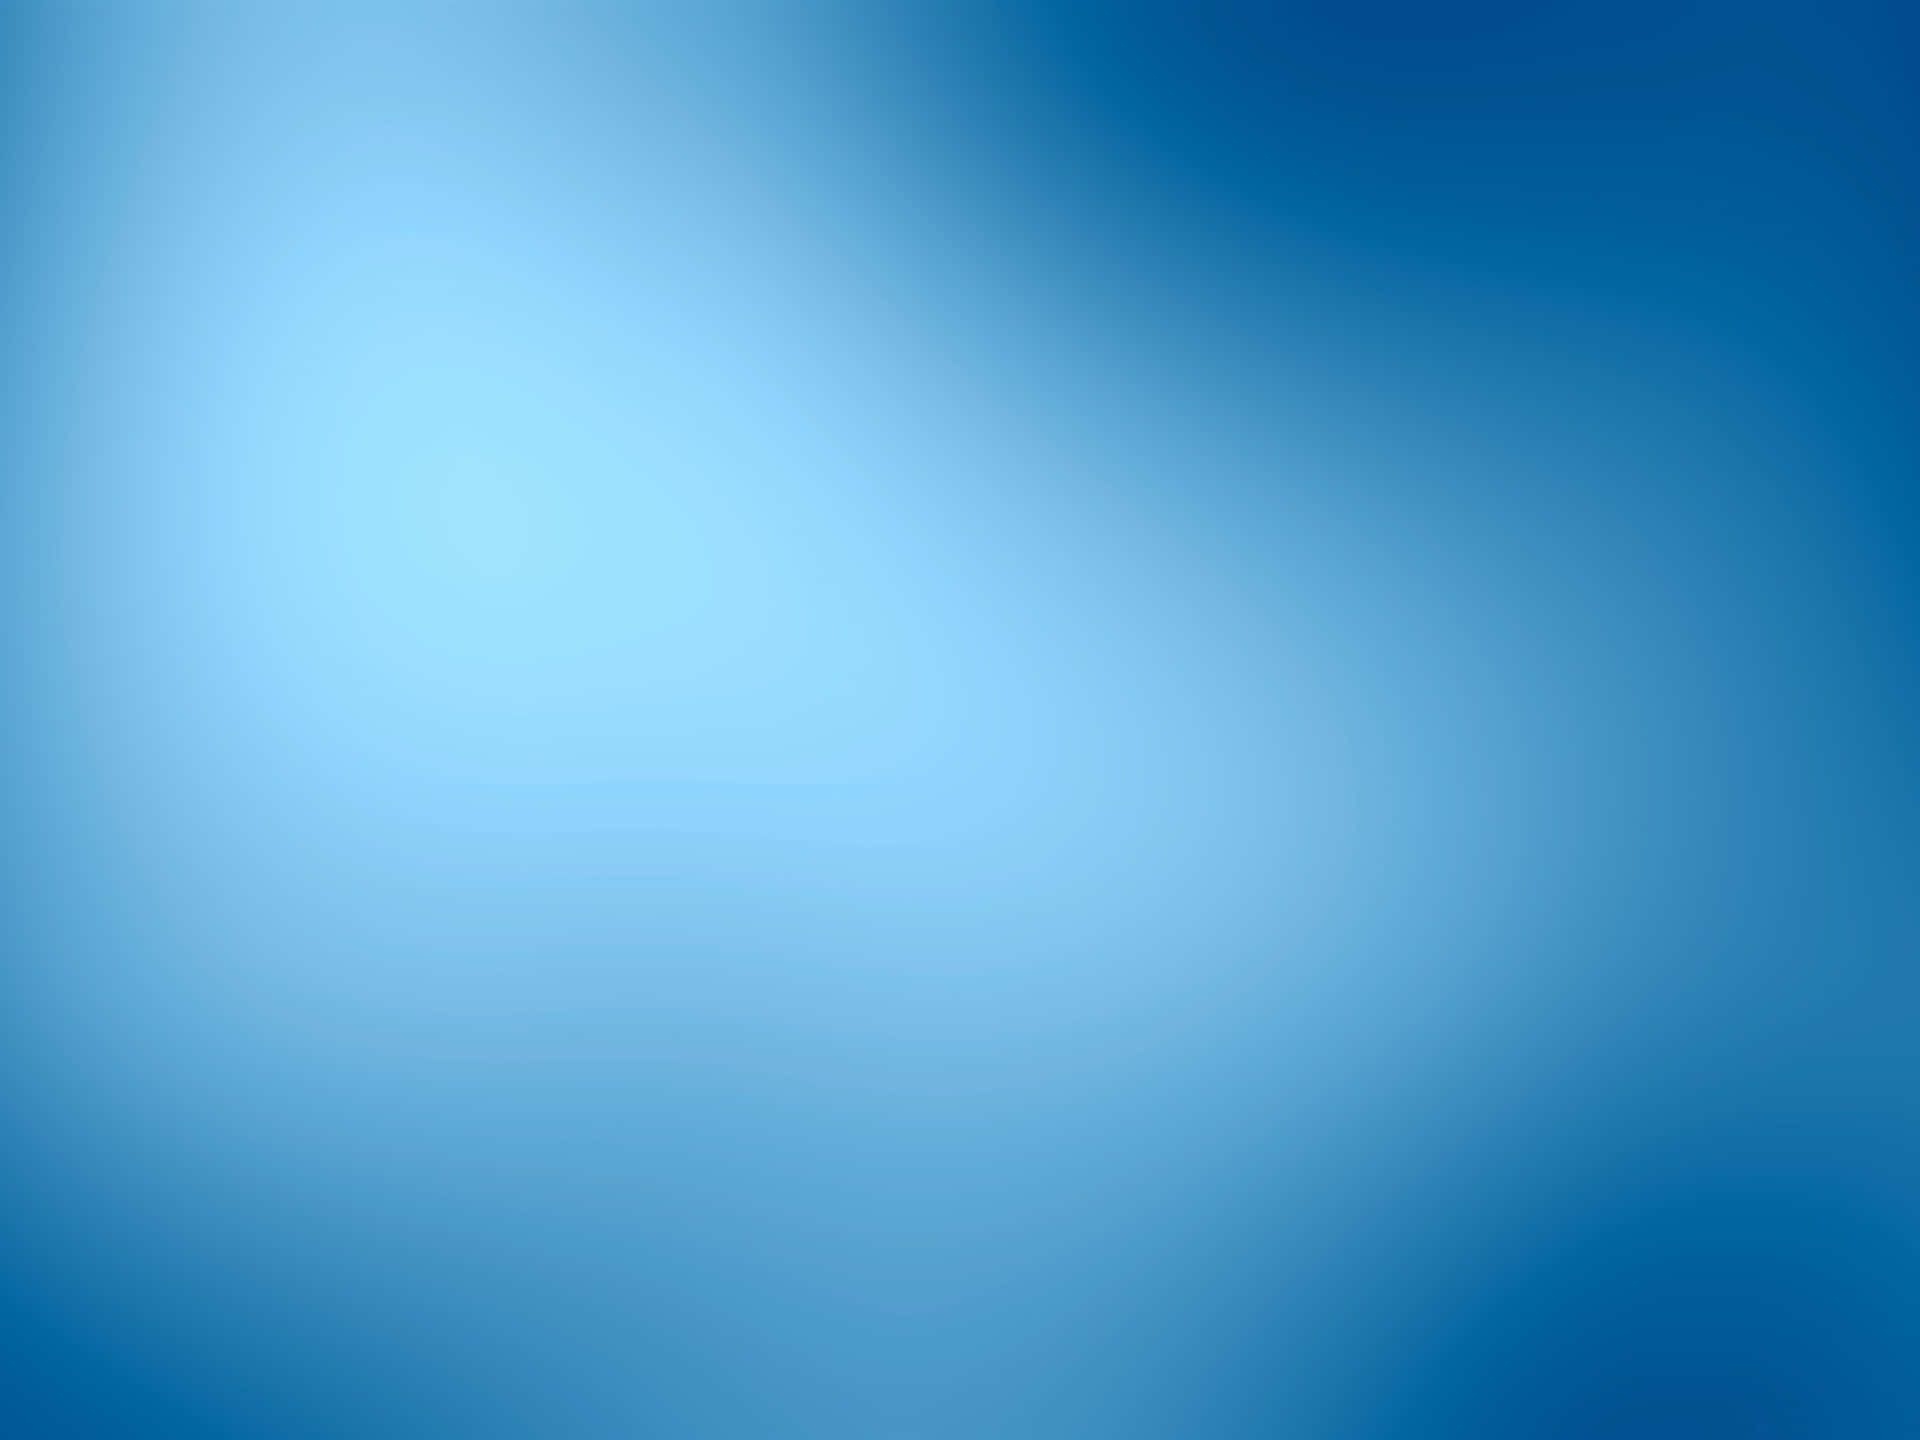 Retratocon Gradiente De Azul Y Blanco Fondo de pantalla